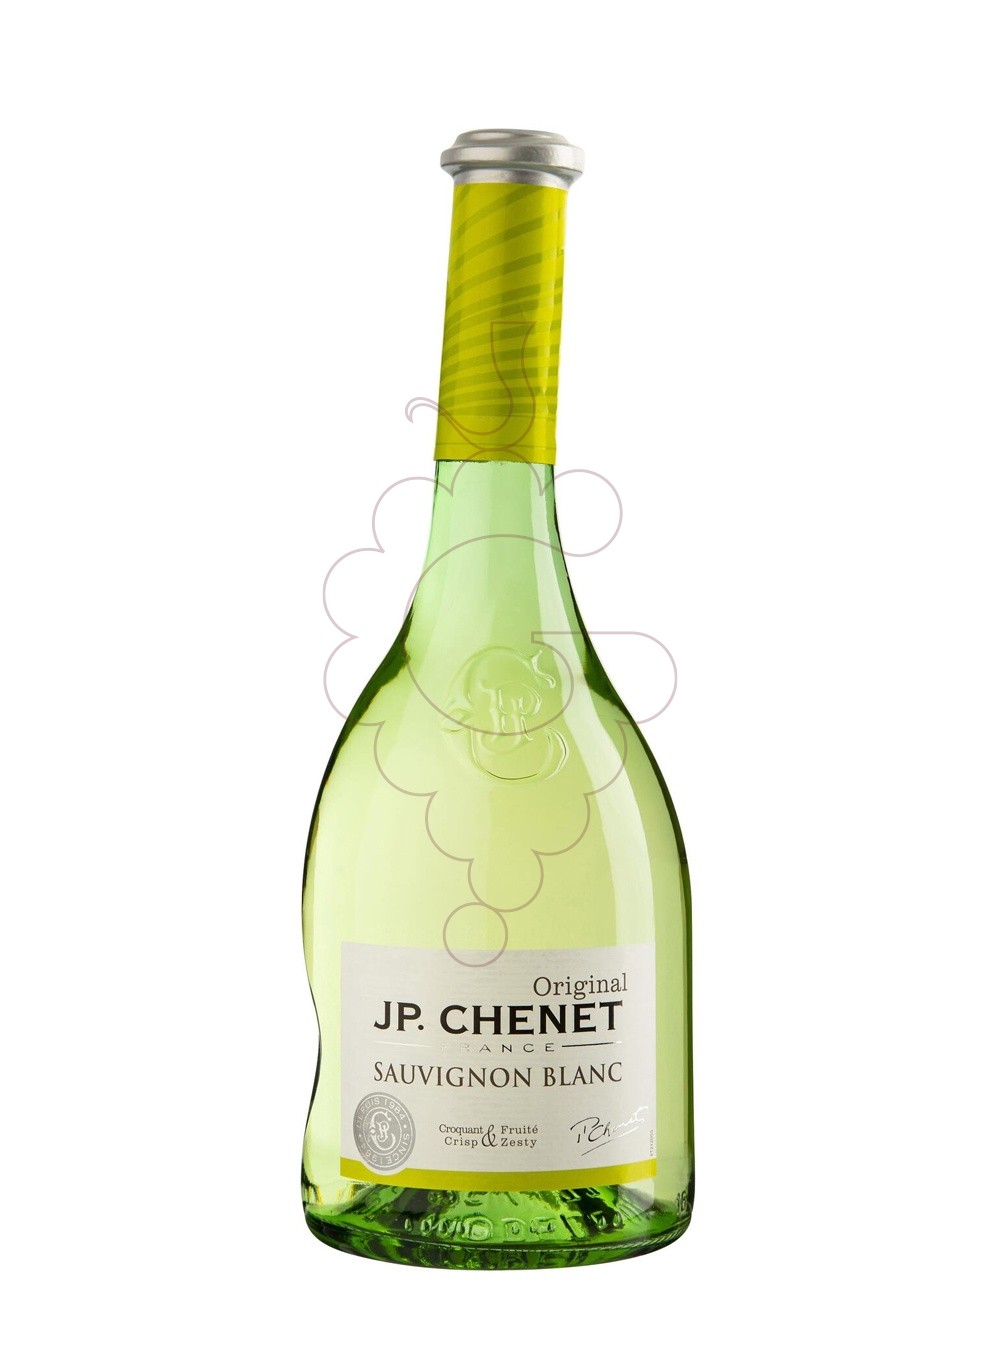 Photo JP Chenet Sauvignon Blanc white wine